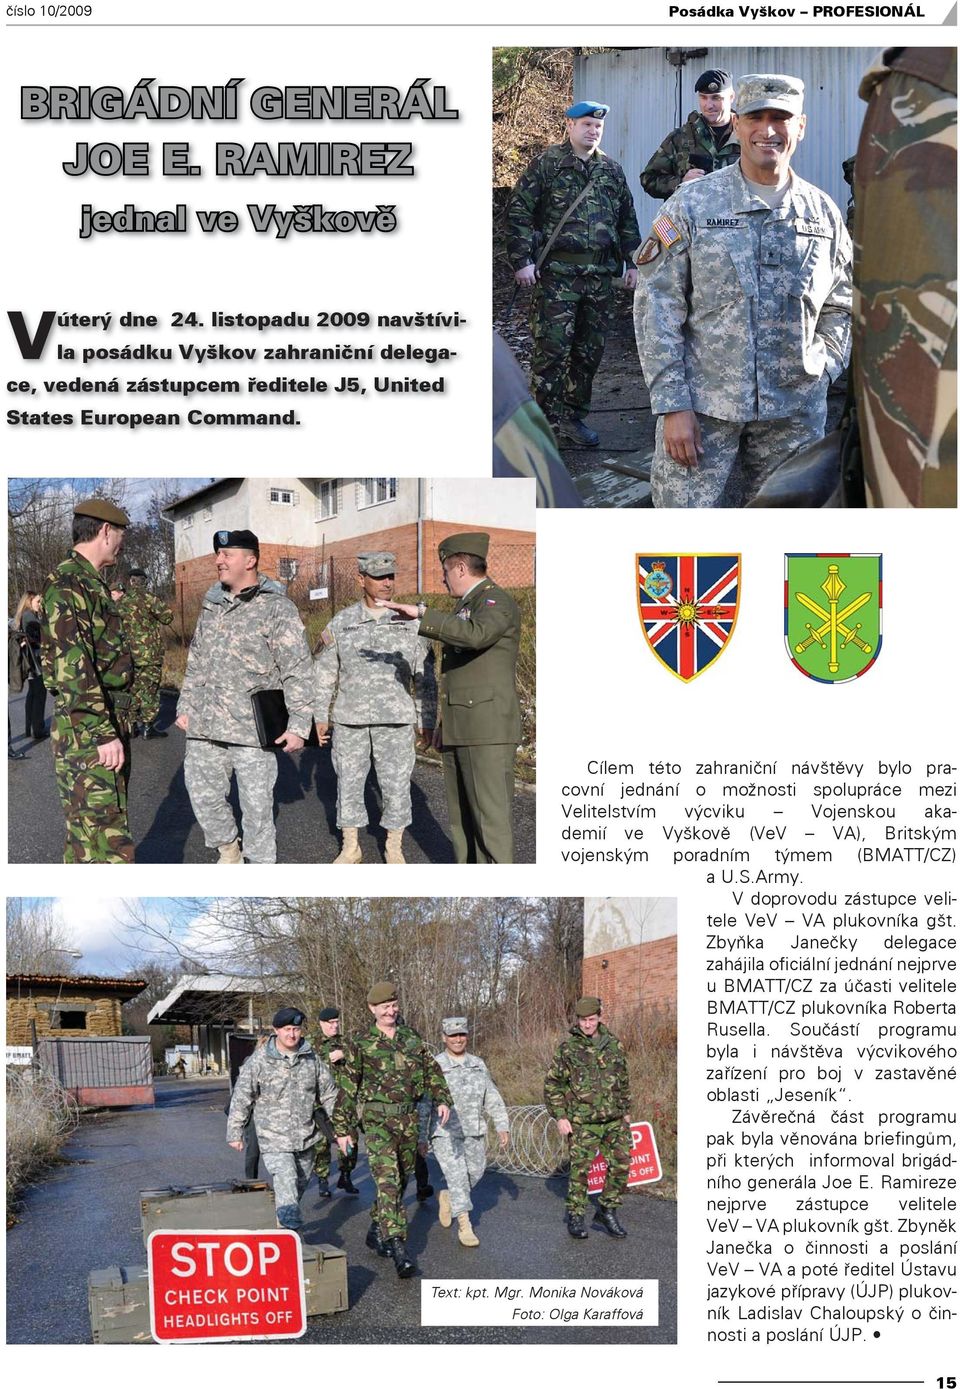 Cílem této zahraniční návštěvy bylo pracovní jednání o možnosti spolupráce mezi Velitelstvím výcviku Vojenskou akademií ve Vyškově (VeV VA), Britským vojenským poradním týmem (BMATT/CZ) a U.S.Army.